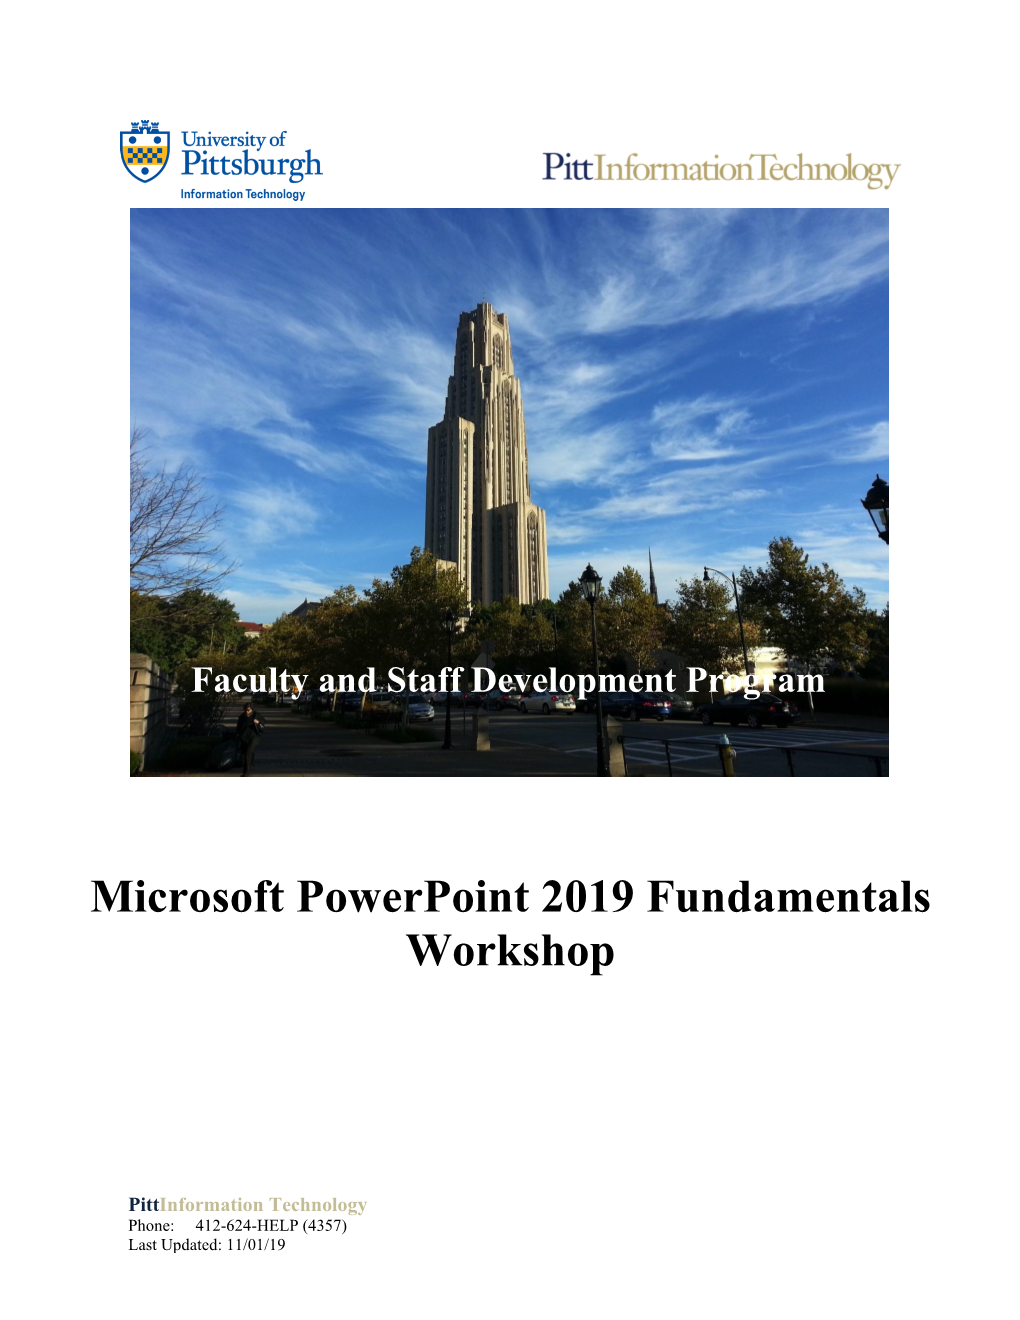 Microsoft Powerpoint 2019 Fundamentals Workshop